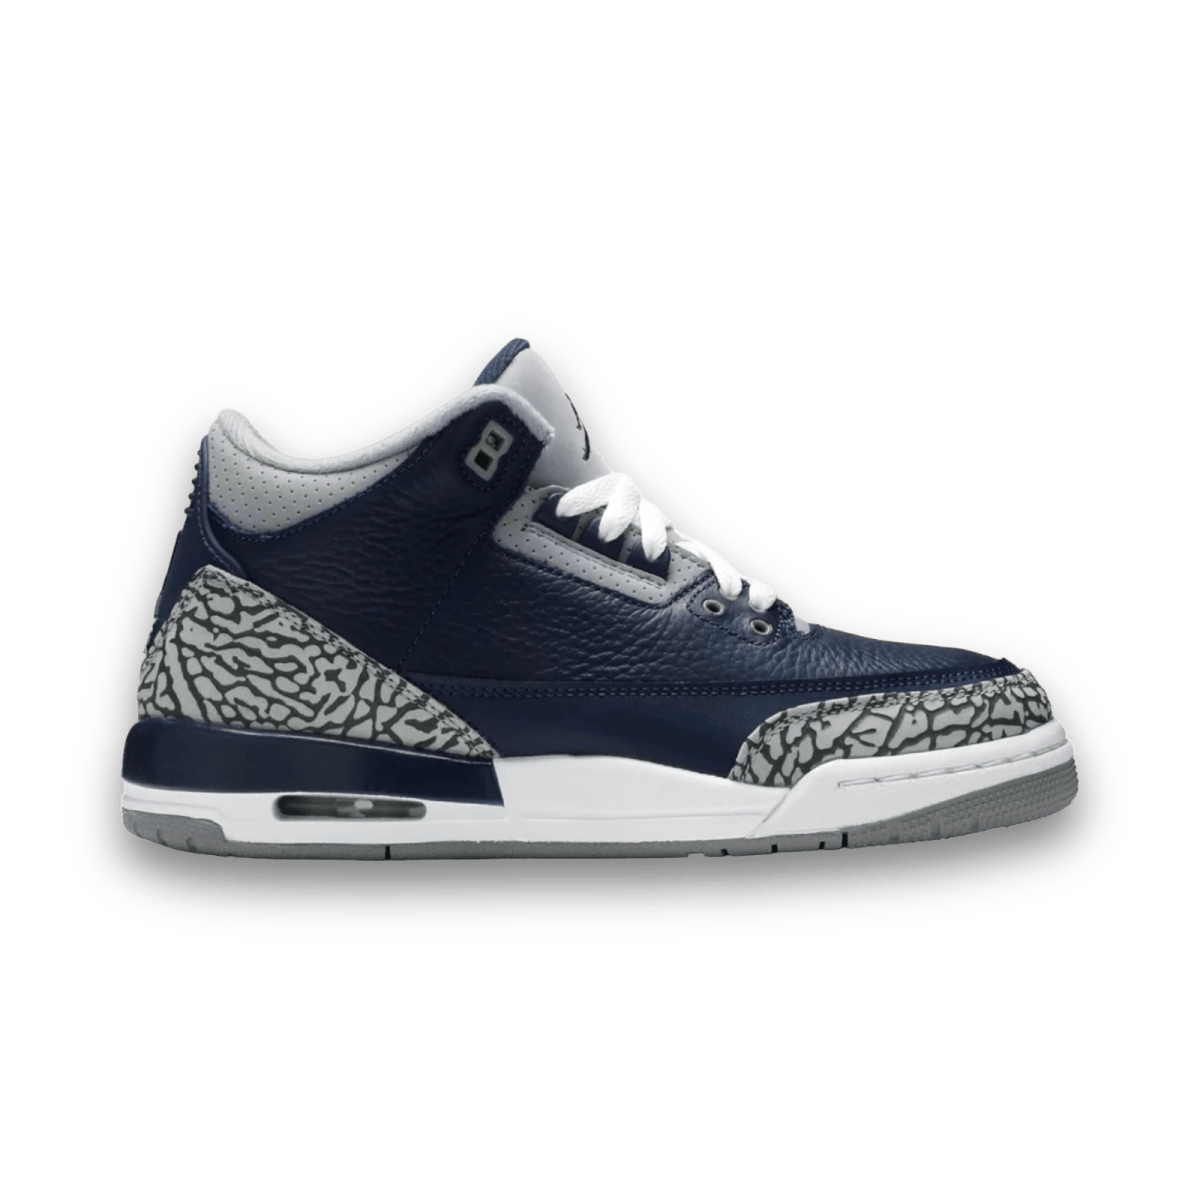 Air Jordan 3 Retro Navy & Silver - Grade School - Mid Sneaker - Jawns on Fire Sneakers & Streetwear